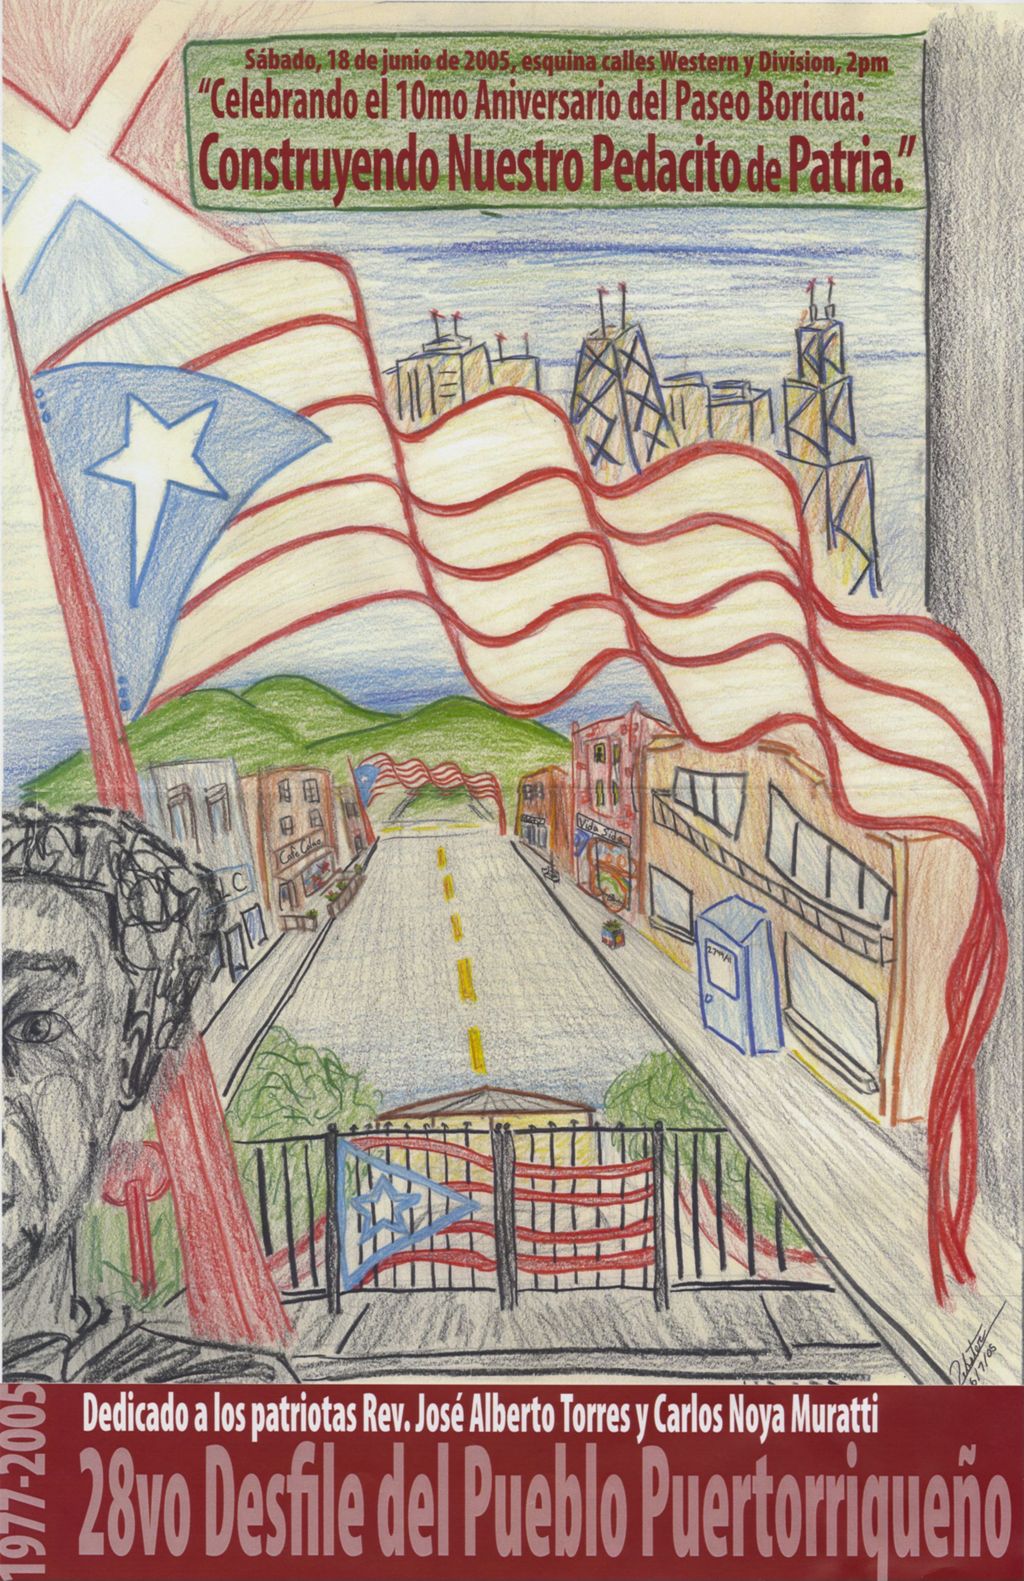 28vo Desfile del Pueblo Puertorriqueno